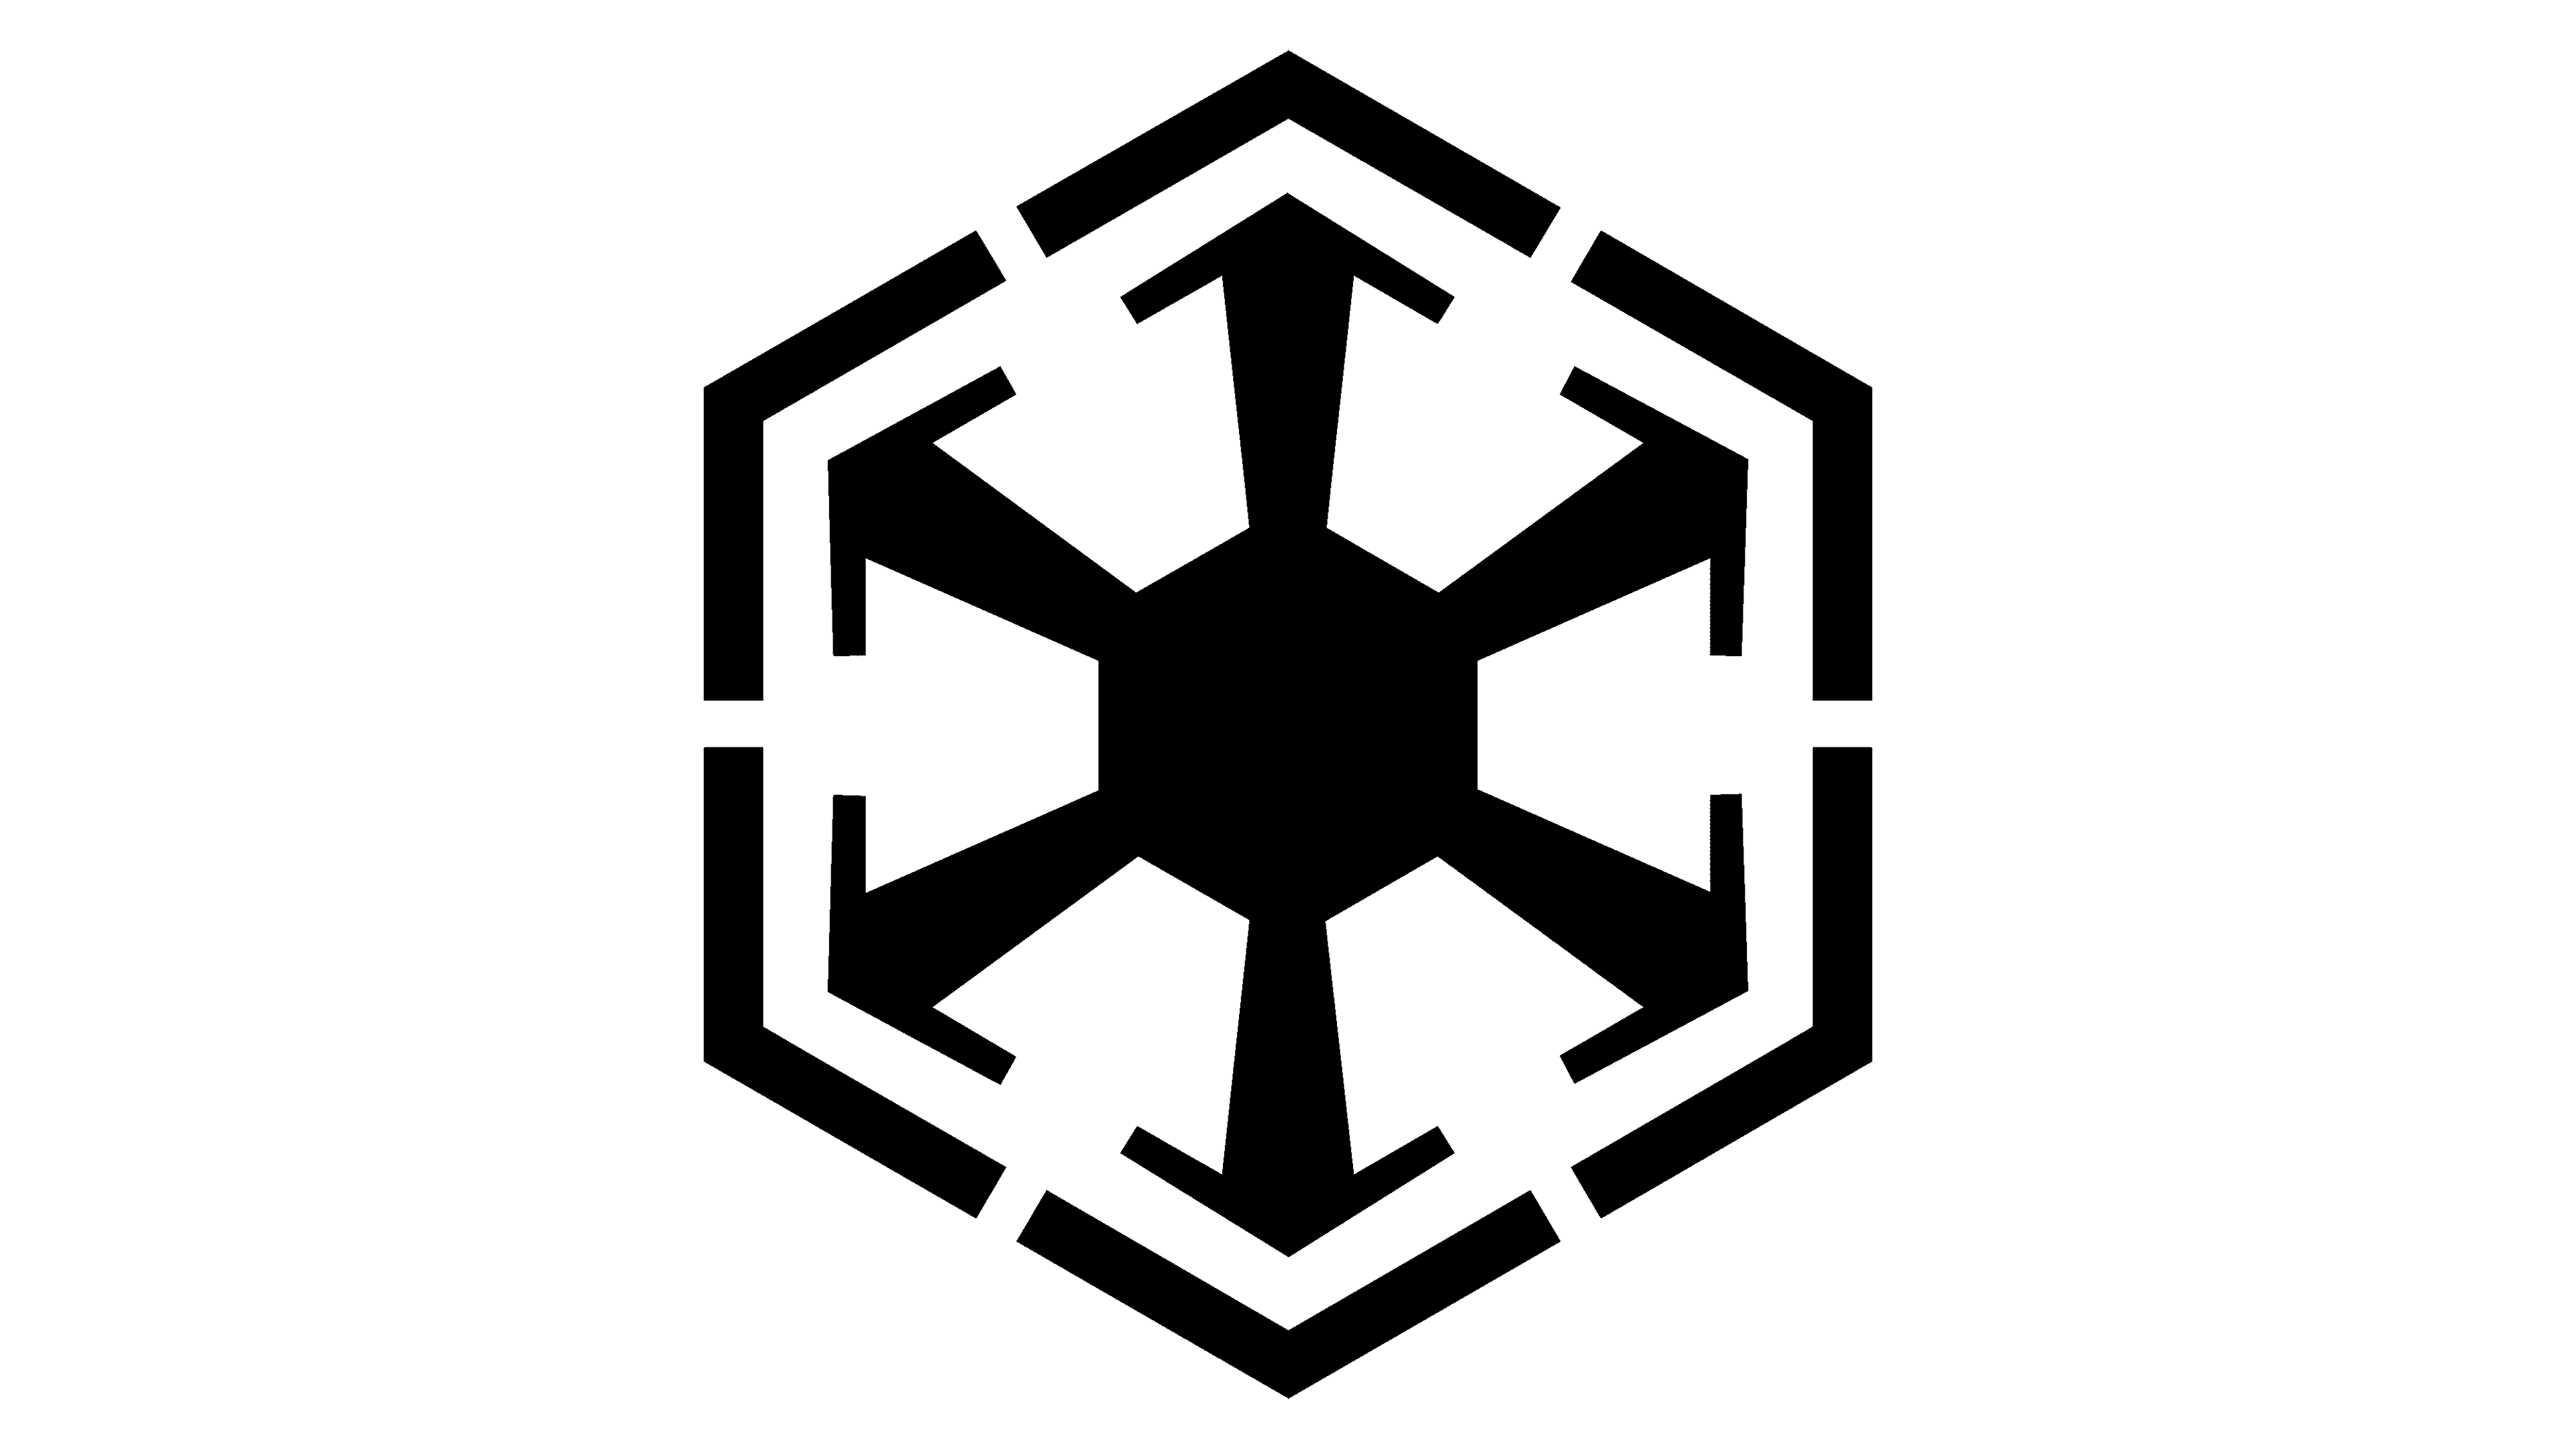 star wars logos and symbols